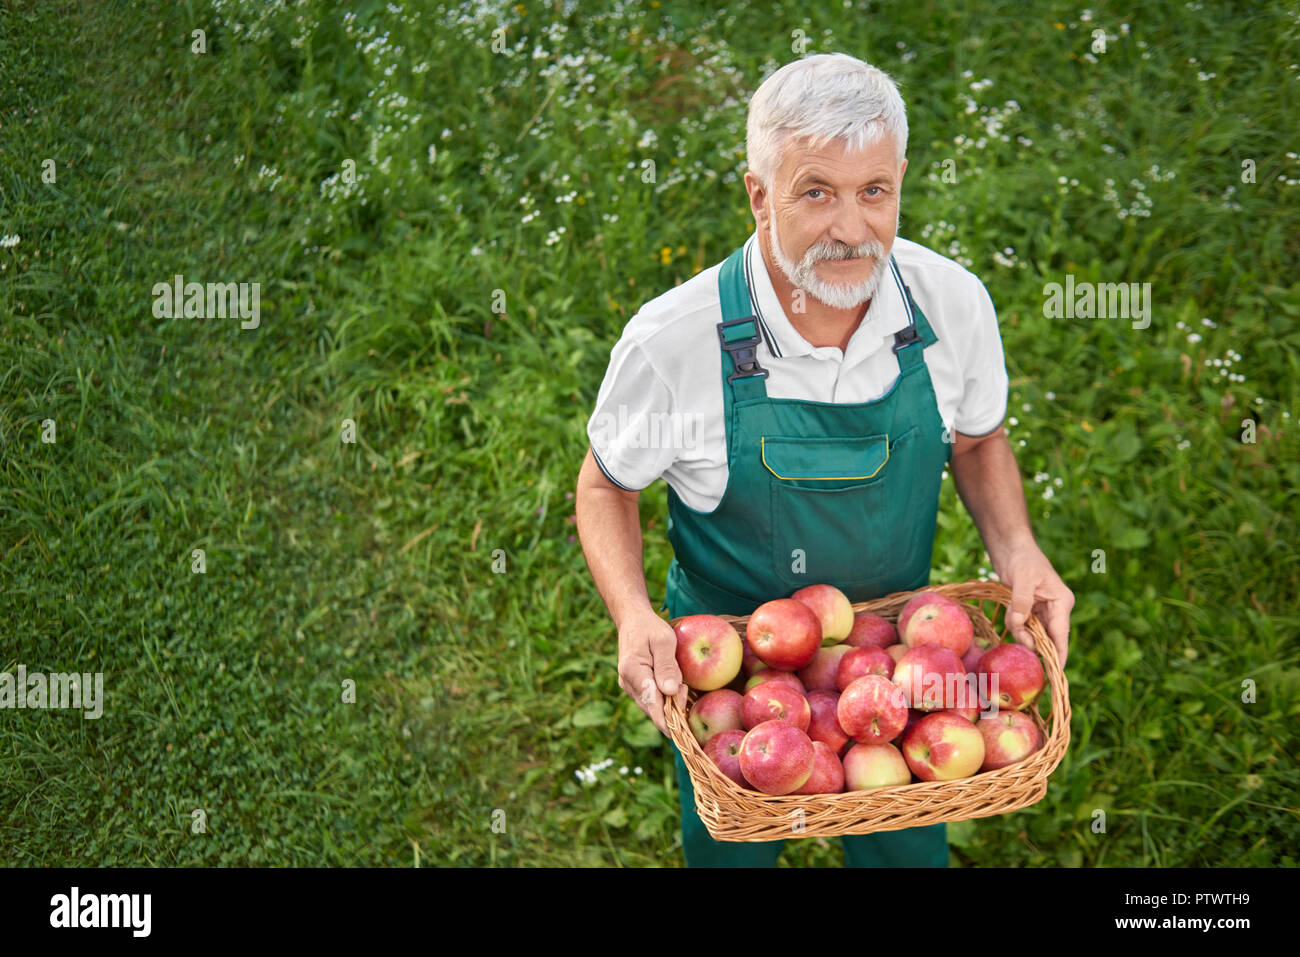 Giardiniere holding cesto pieno di carni rosse mele e permanente sulla grazia verde. Il vecchio uomo con i capelli grigi e la barba cercando fino alla telecamera. Agricoltore indossando tute verde. Foto Stock